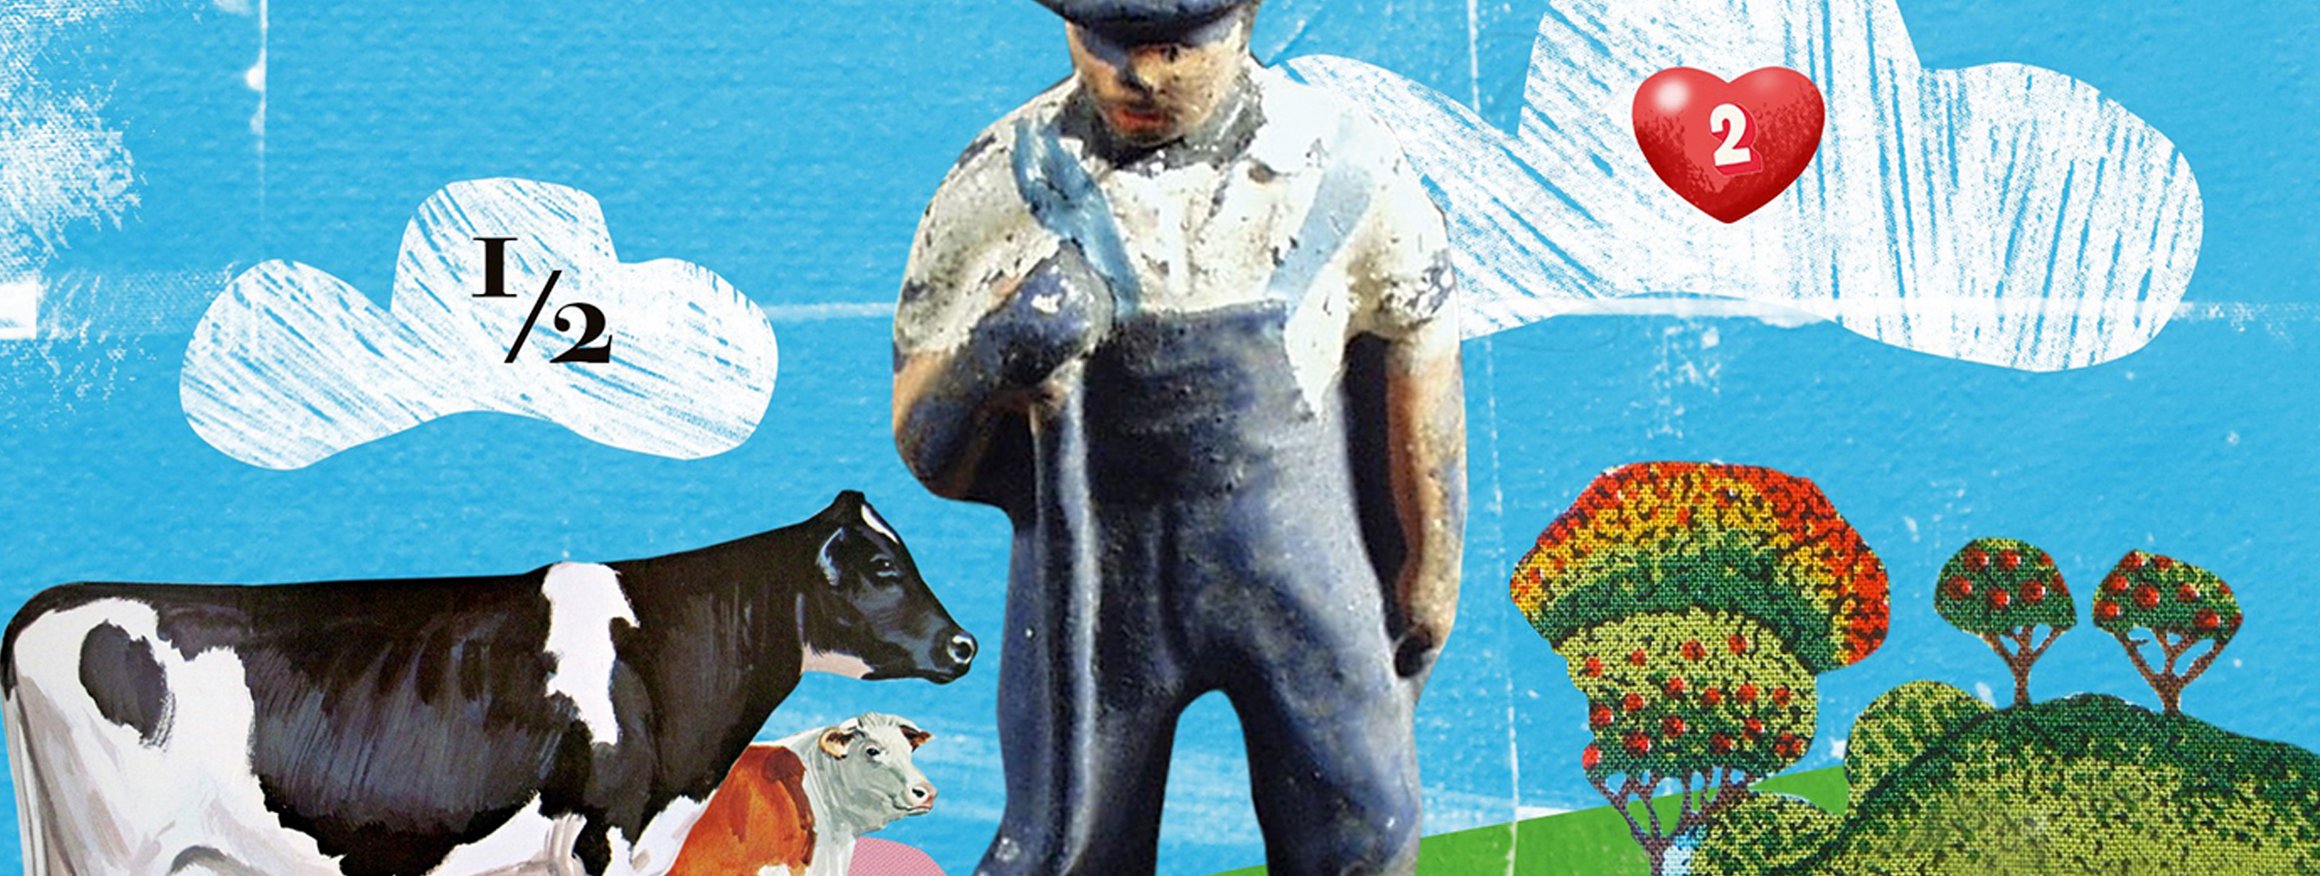 Die Illustration zeigt eine Bauernfigur, die in einer Landschaft steht, um sie herum Kühe und darüber ein blauer Himmel mit weißen Wolken